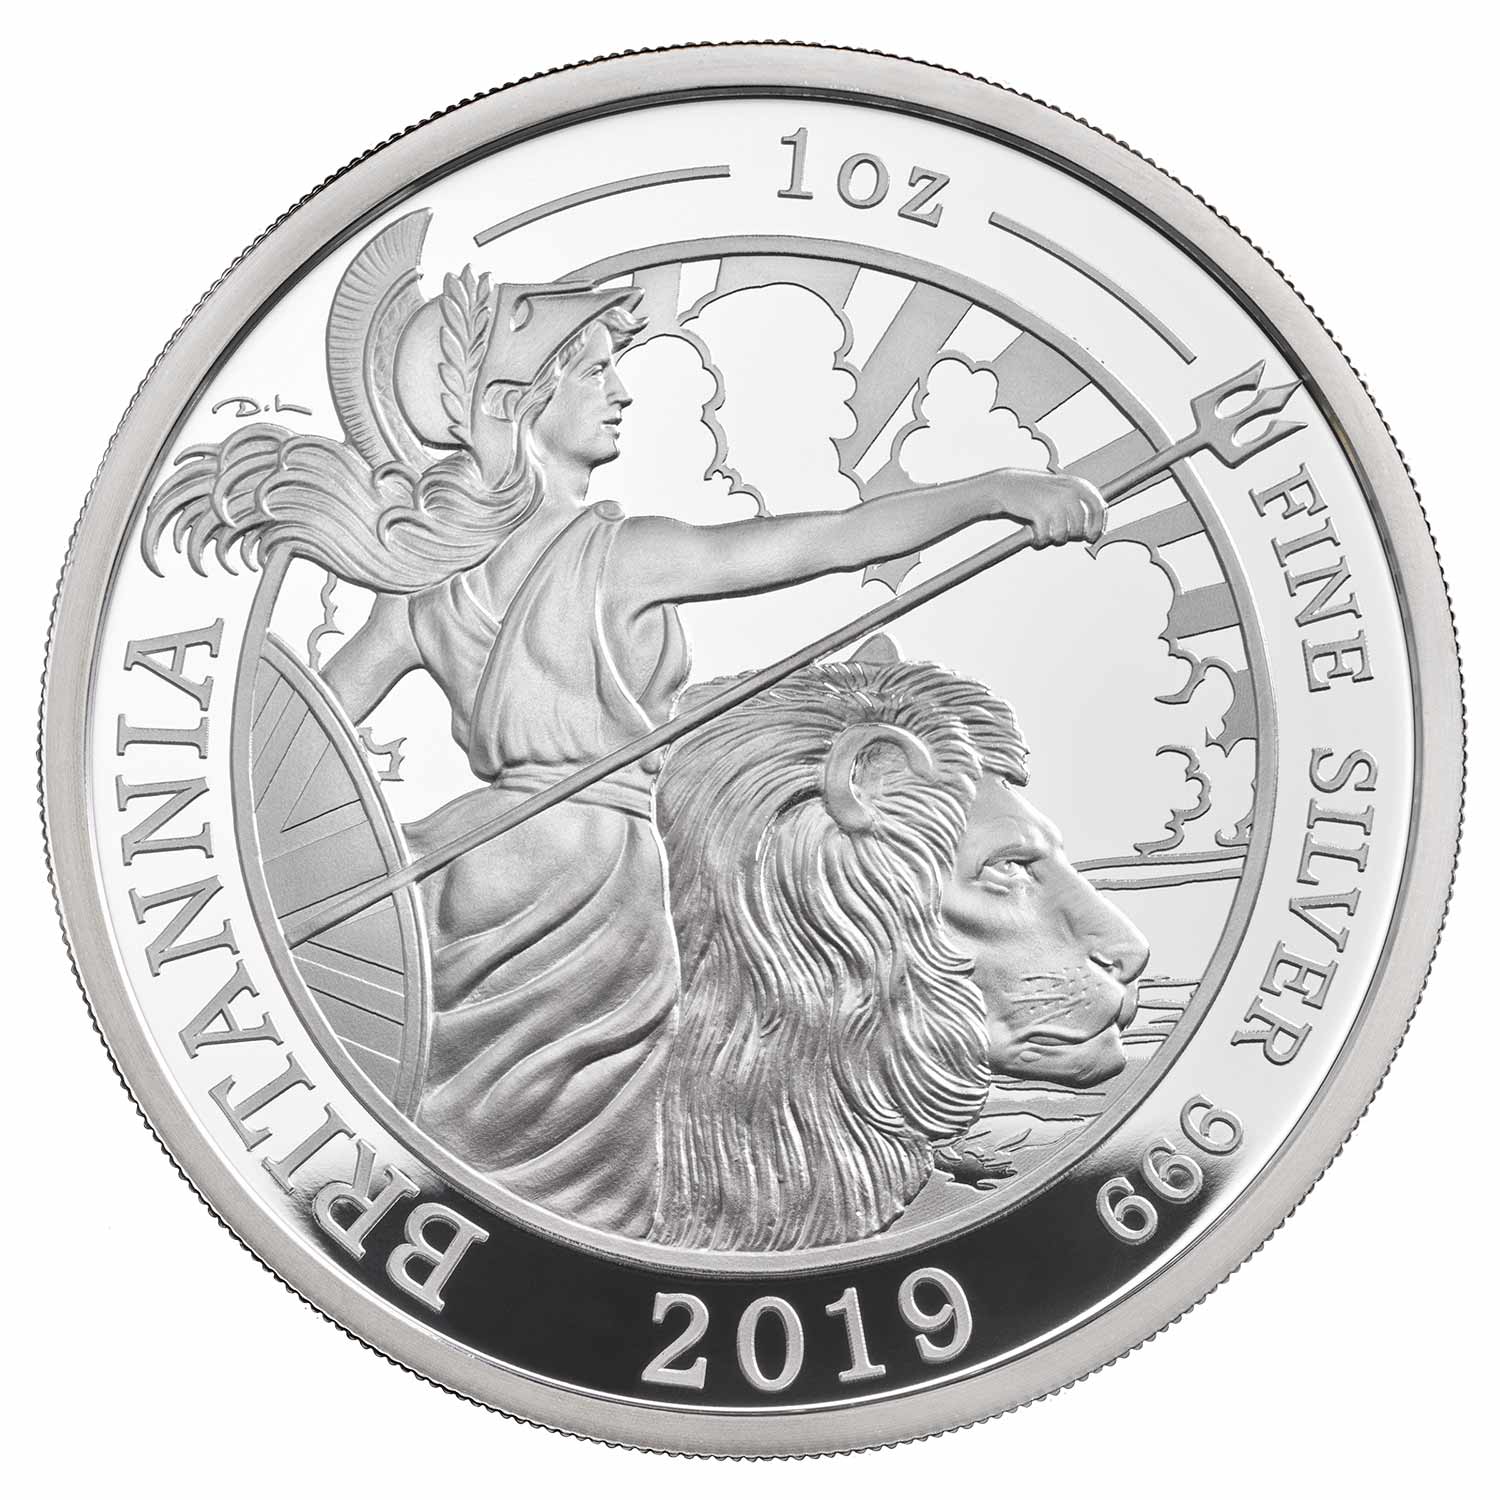 Britannia Silver Proof, United Kingdom, 2019, 1oz, Silver 99.9%